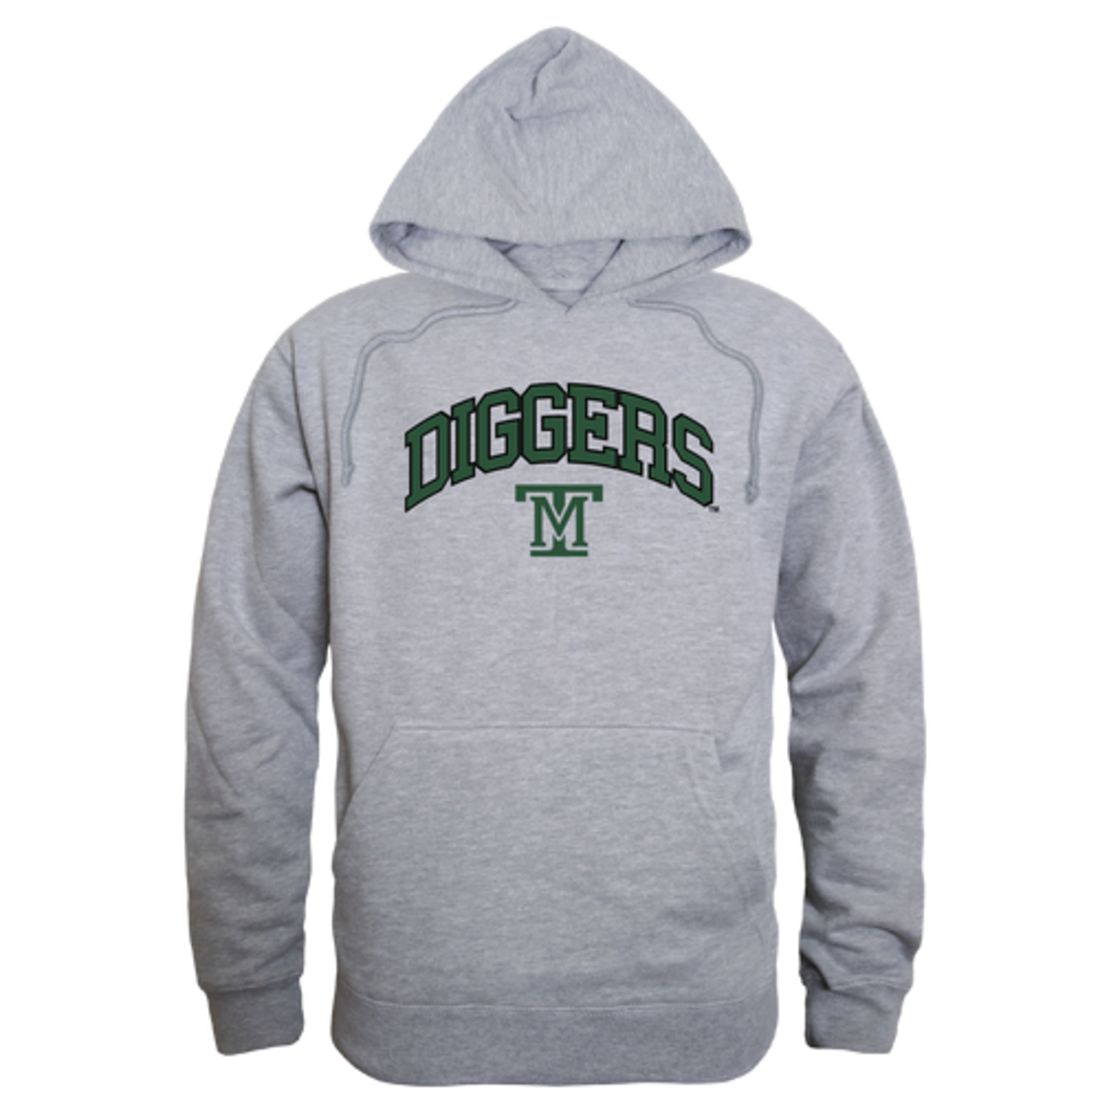 Montana Tech of the University of Montana Orediggers Campus Fleece Hoodie Sweatshirts